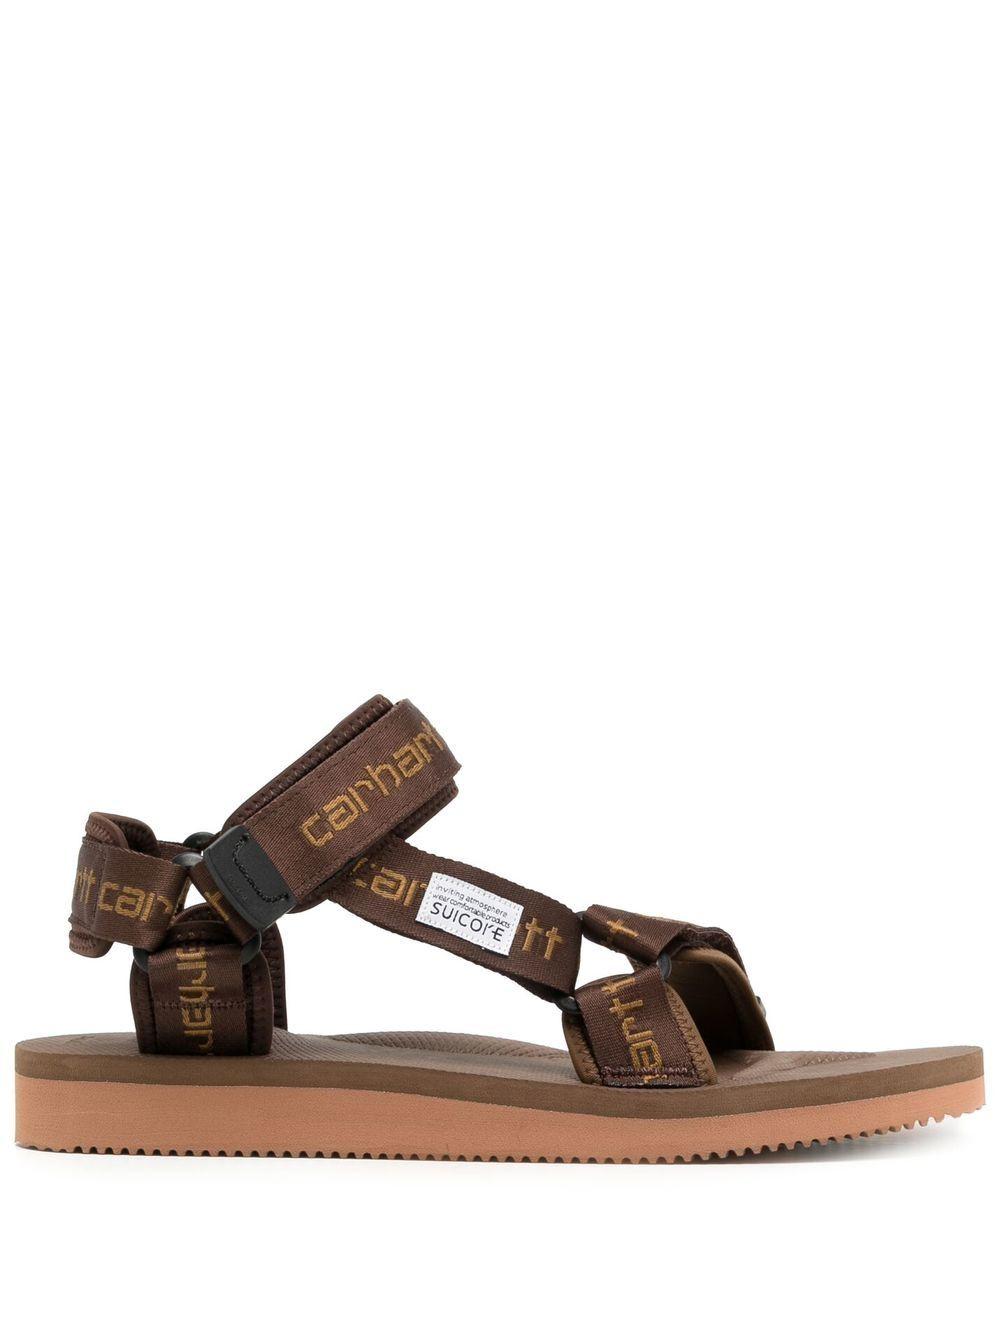 Suicoke X Carhartt Multi-strap Logo Sandals in Brown | Lyst